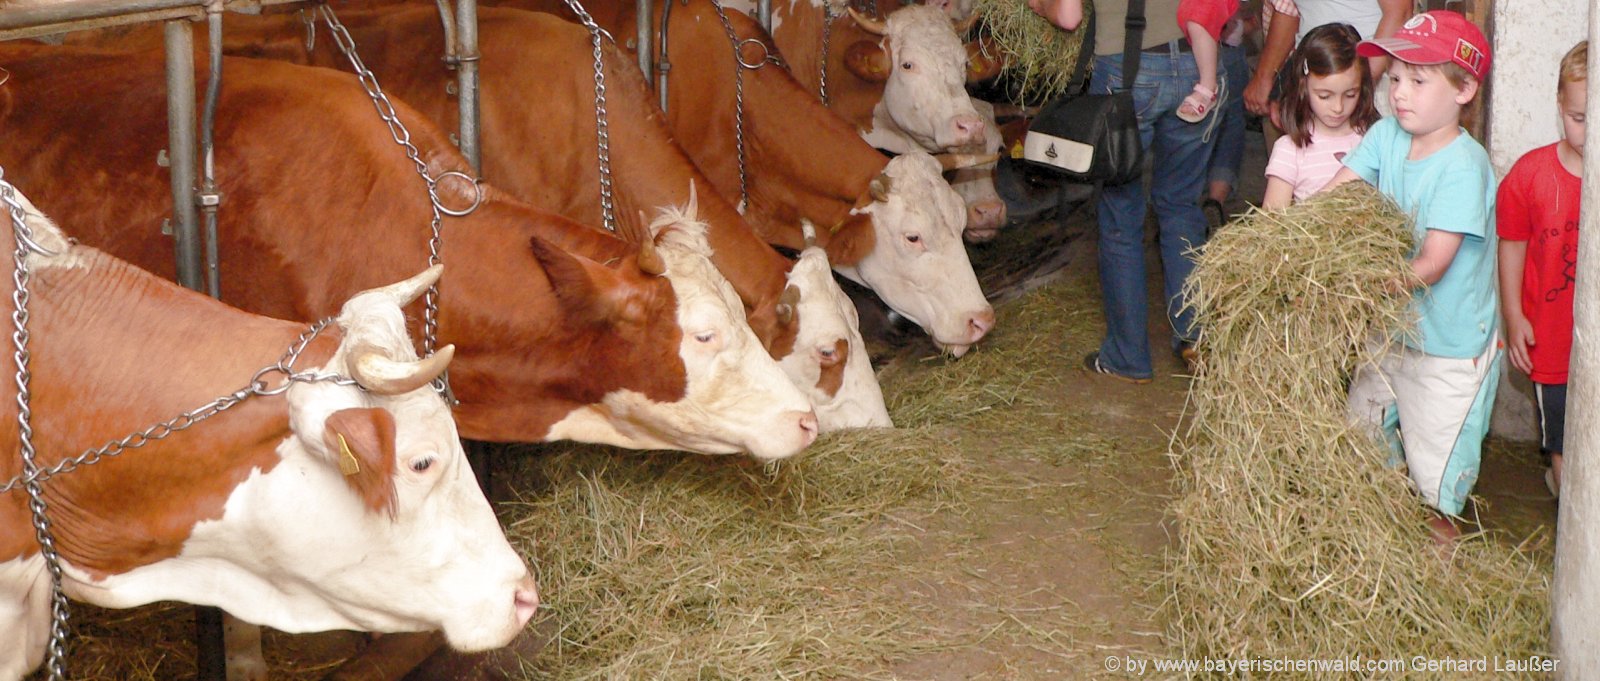 Bauernhofurlaub mit Kühen auf der Weide und im Stall